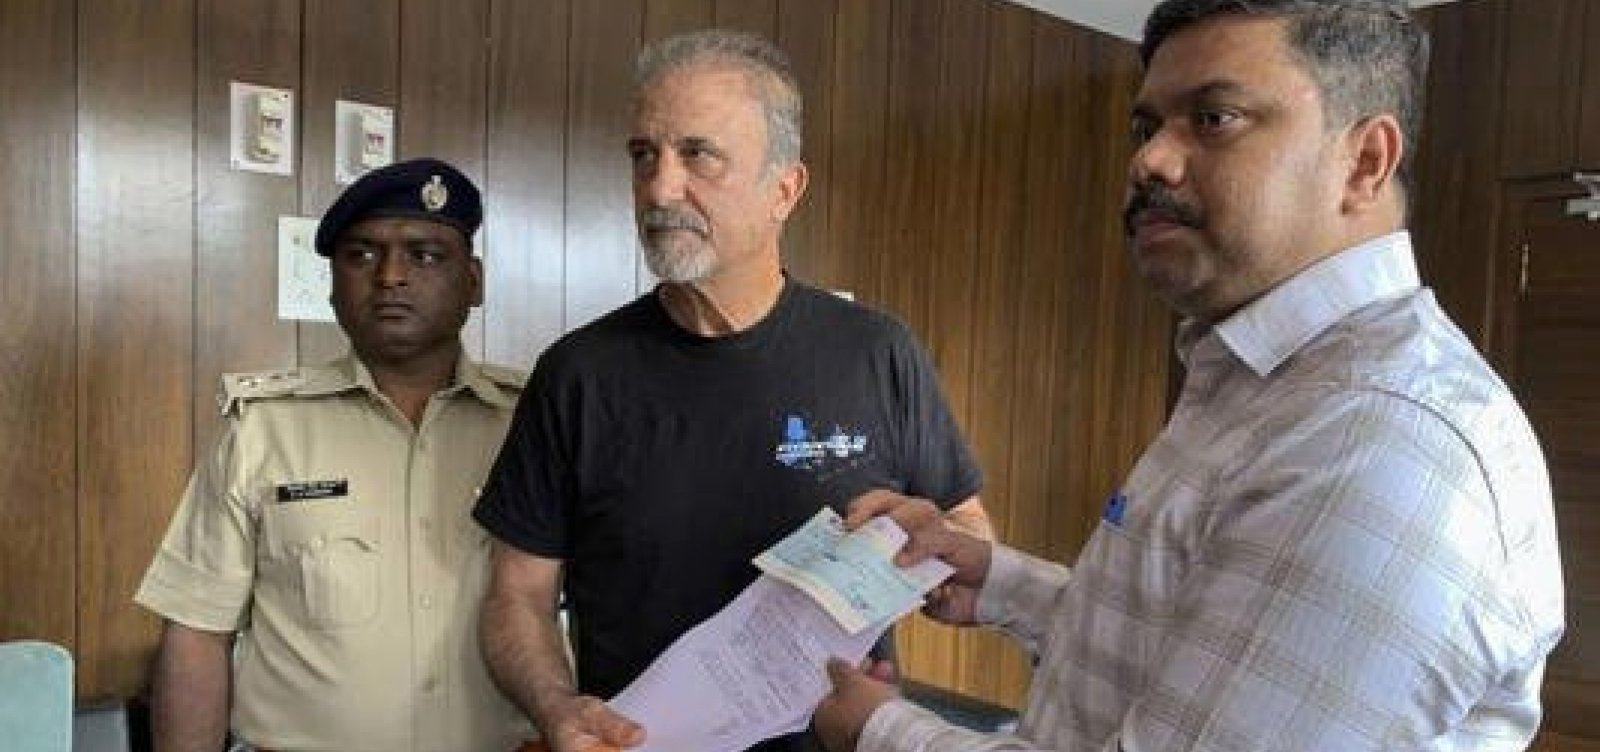 Brasileira estuprada na Índia e marido recebem indenização do governo indiano equivalente a R$60 mil 